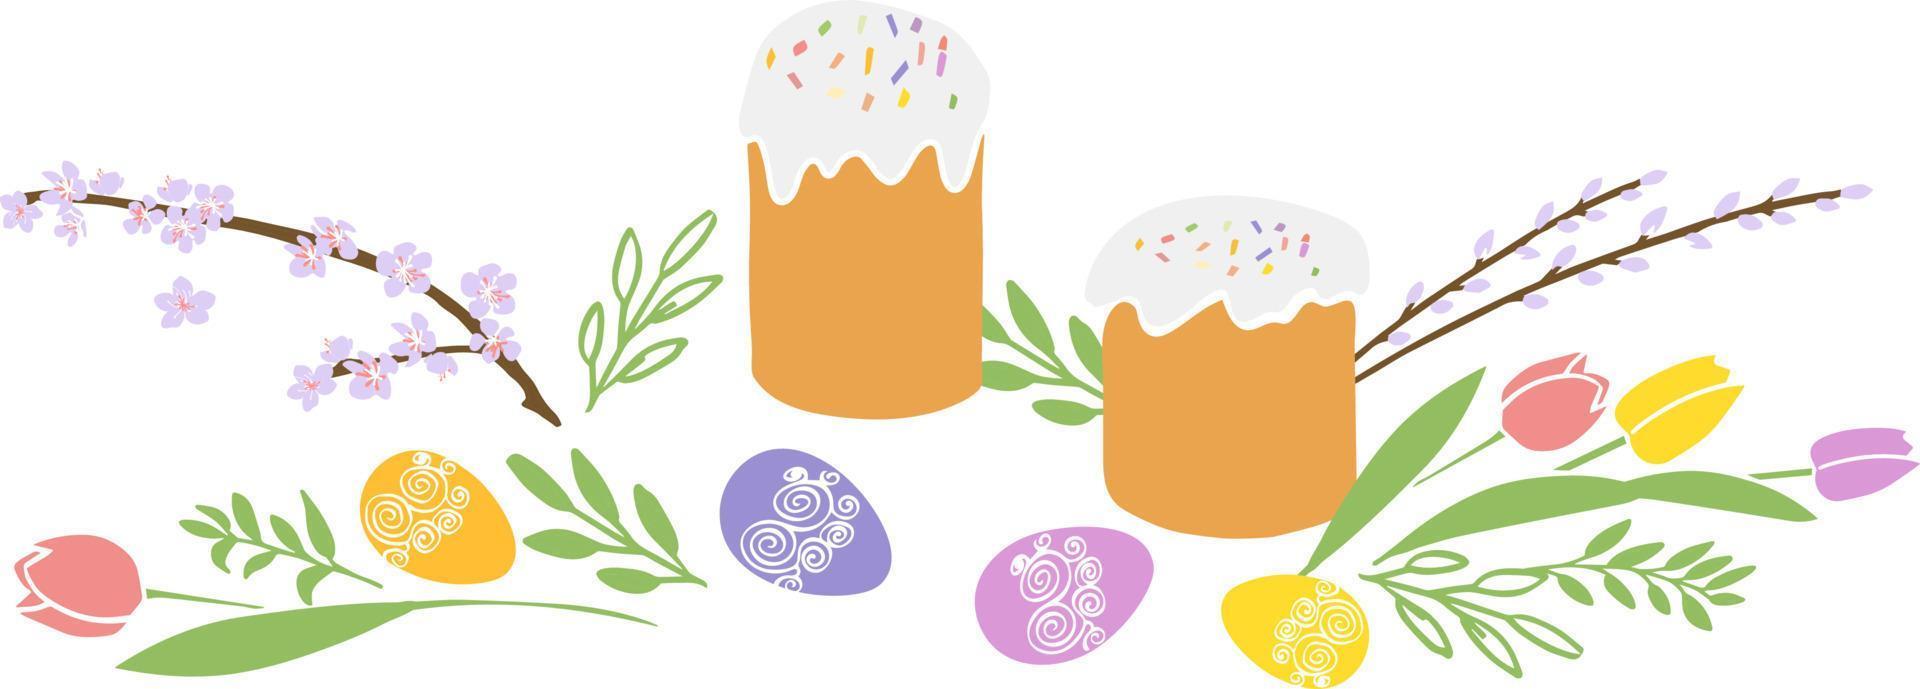 illustrazione della cartolina d'auguri di buona pasqua con la torta e l'uovo di pasqua tradizionali di simbolo, fiori di primavera vettore